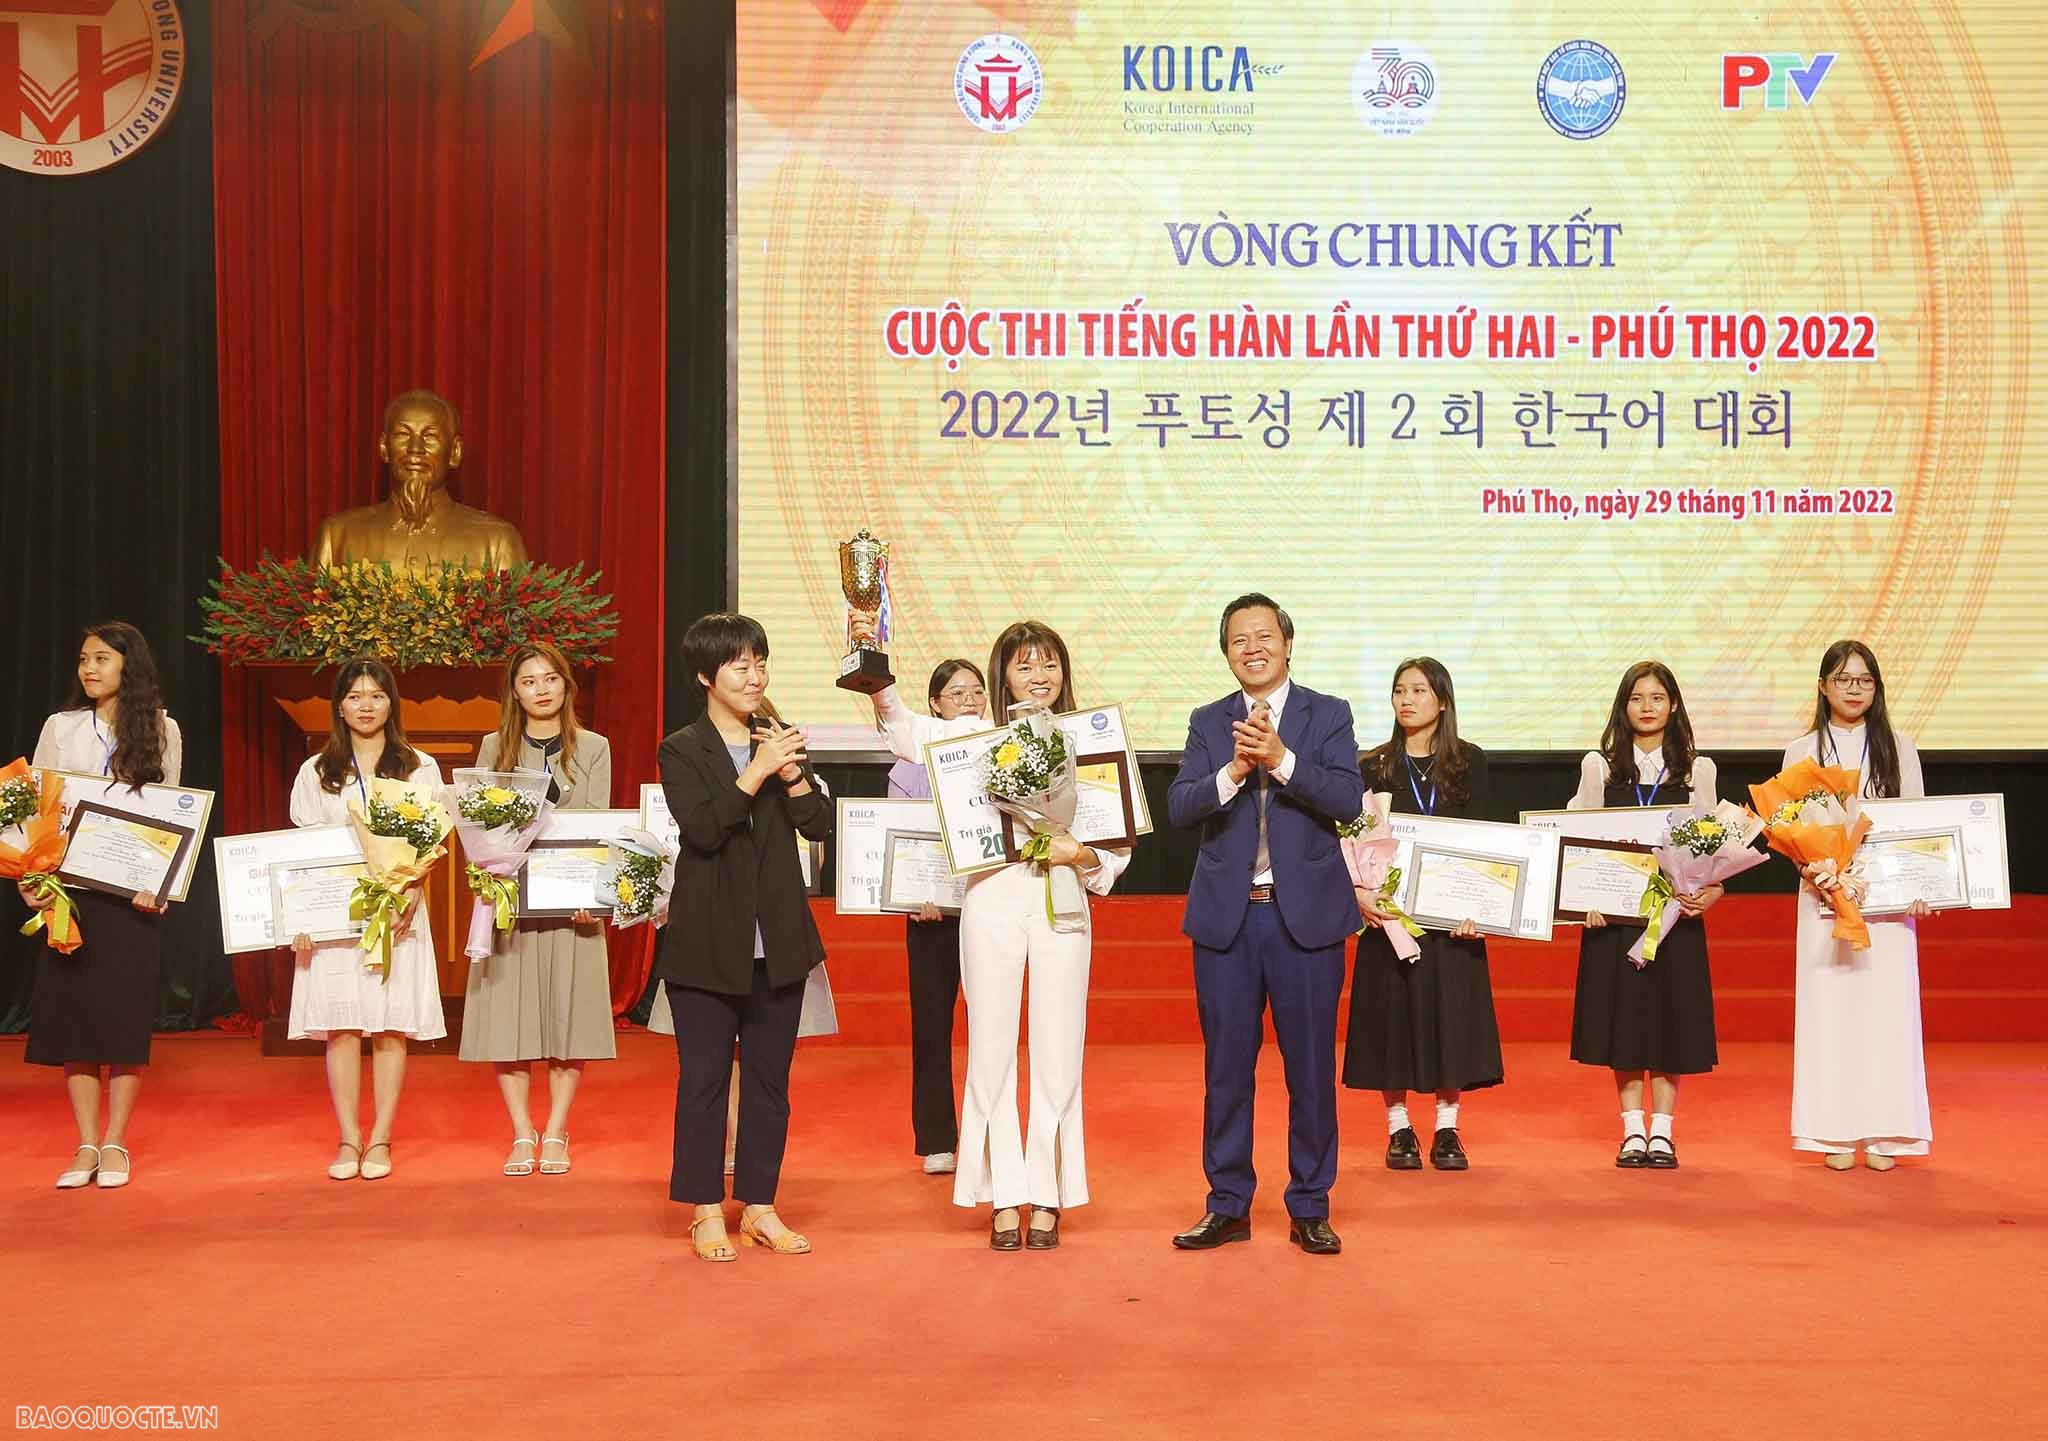 Thí sinh Bùi Thị Thủy, Công ty TNHH Hanyang Digitech Vina - Khu công nghiệp Phú Hà, Thị xã Phú Thọ đã xuất sắc dành giải Nhất cuộc thi.